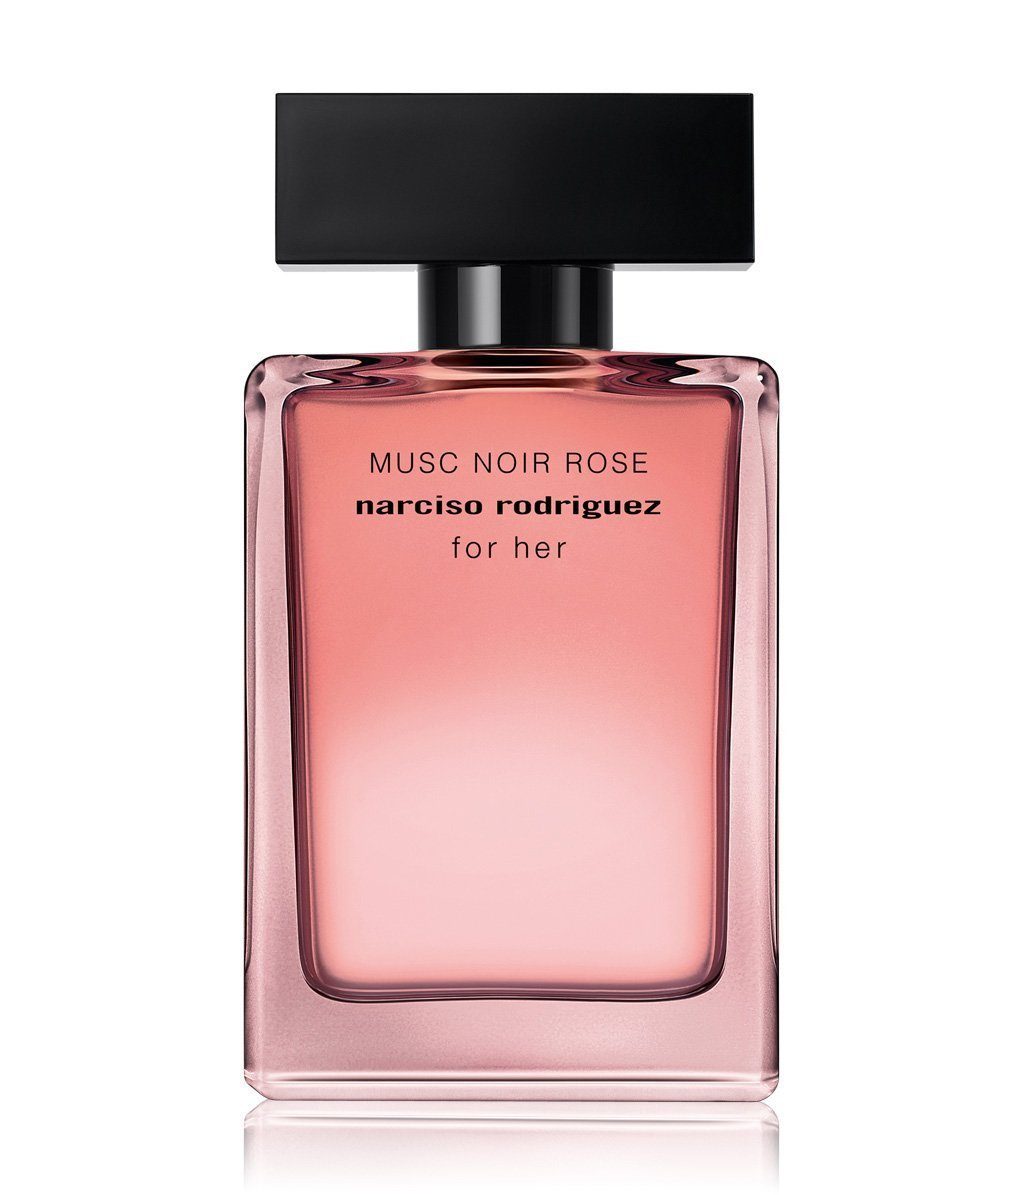 Narcisco Rodriguez narciso rodriguez Eau de Parfum For her Musc Noir Rose